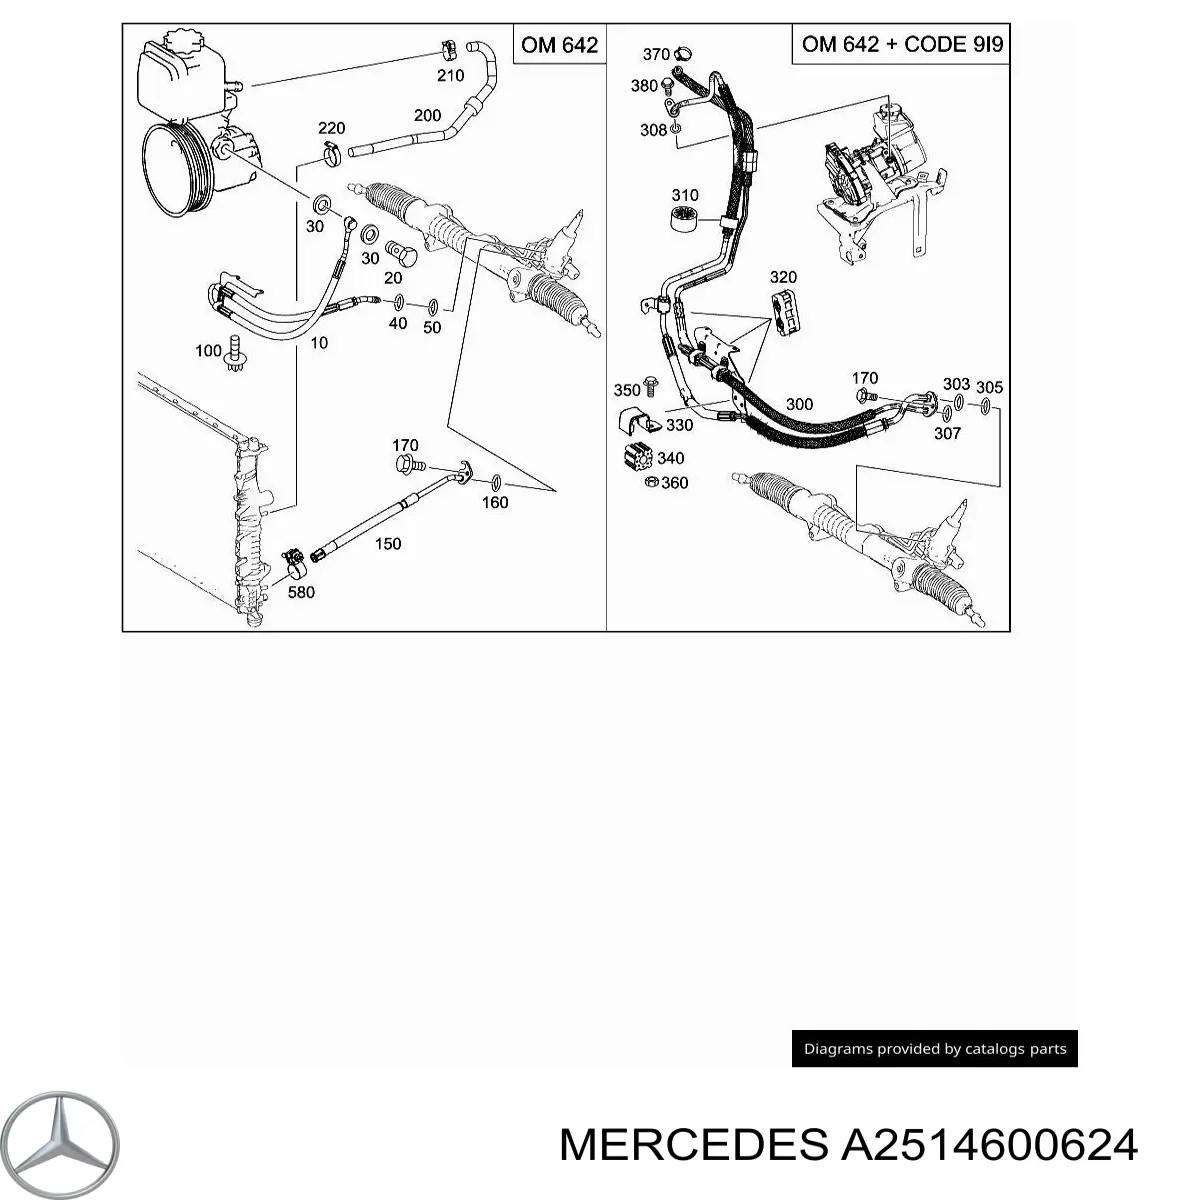 A2514600624 Mercedes mangueira da direção hidrâulica assistida de pressão alta desde a bomba até a régua (do mecanismo)